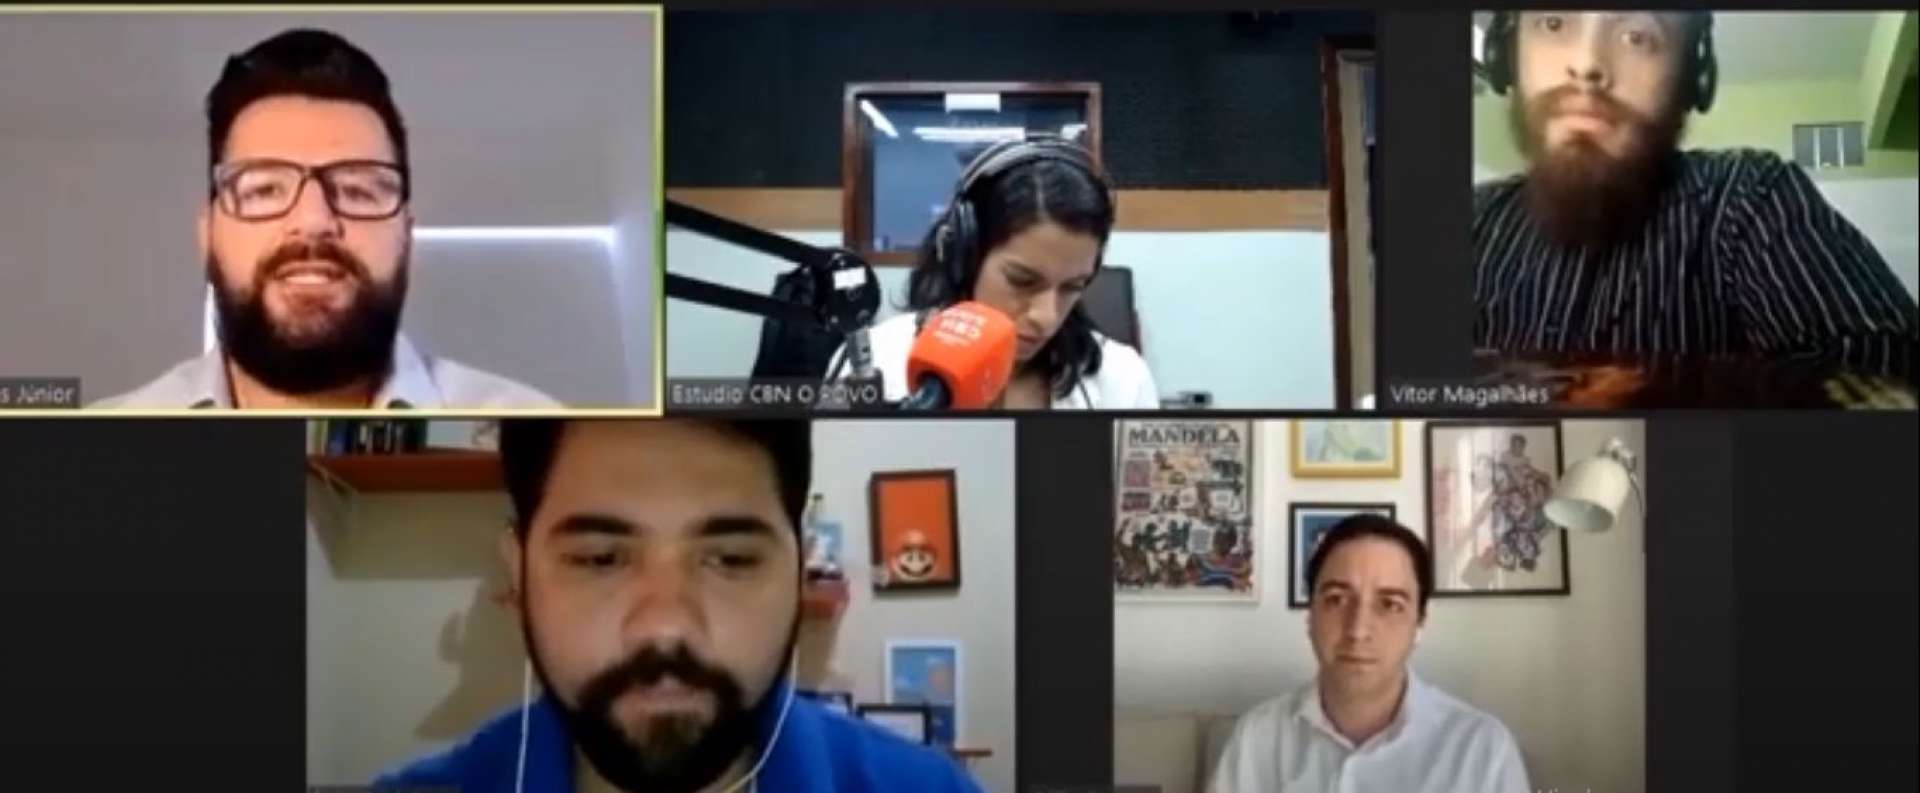 CÉLIO Studart foi entrevistado pelos jornalistas Farias Júnior, Italo Coriolano, Rachel Gomes e Vítor Magalhães (Foto: Reprodução)